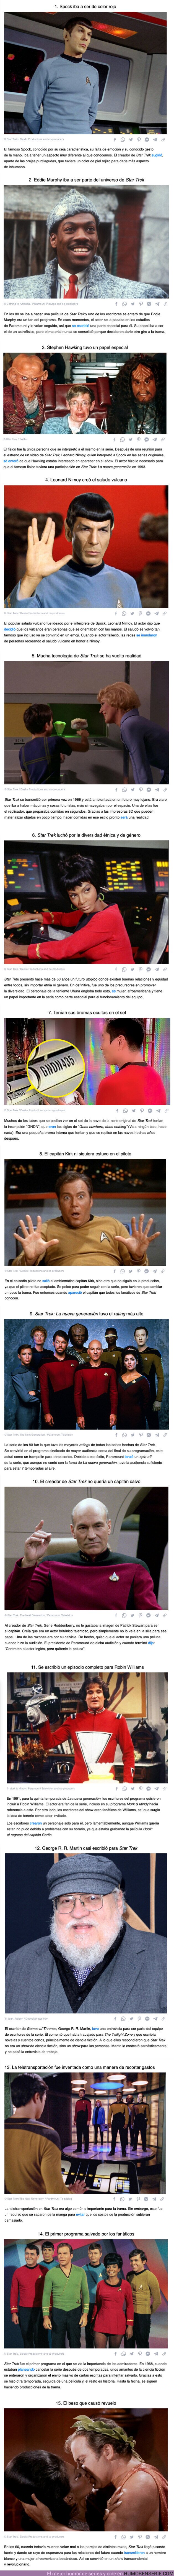 105732 - GALERÍA: 15 Datos de “Star Trek” demuestran que la serie estaba años luz adelantada a su época